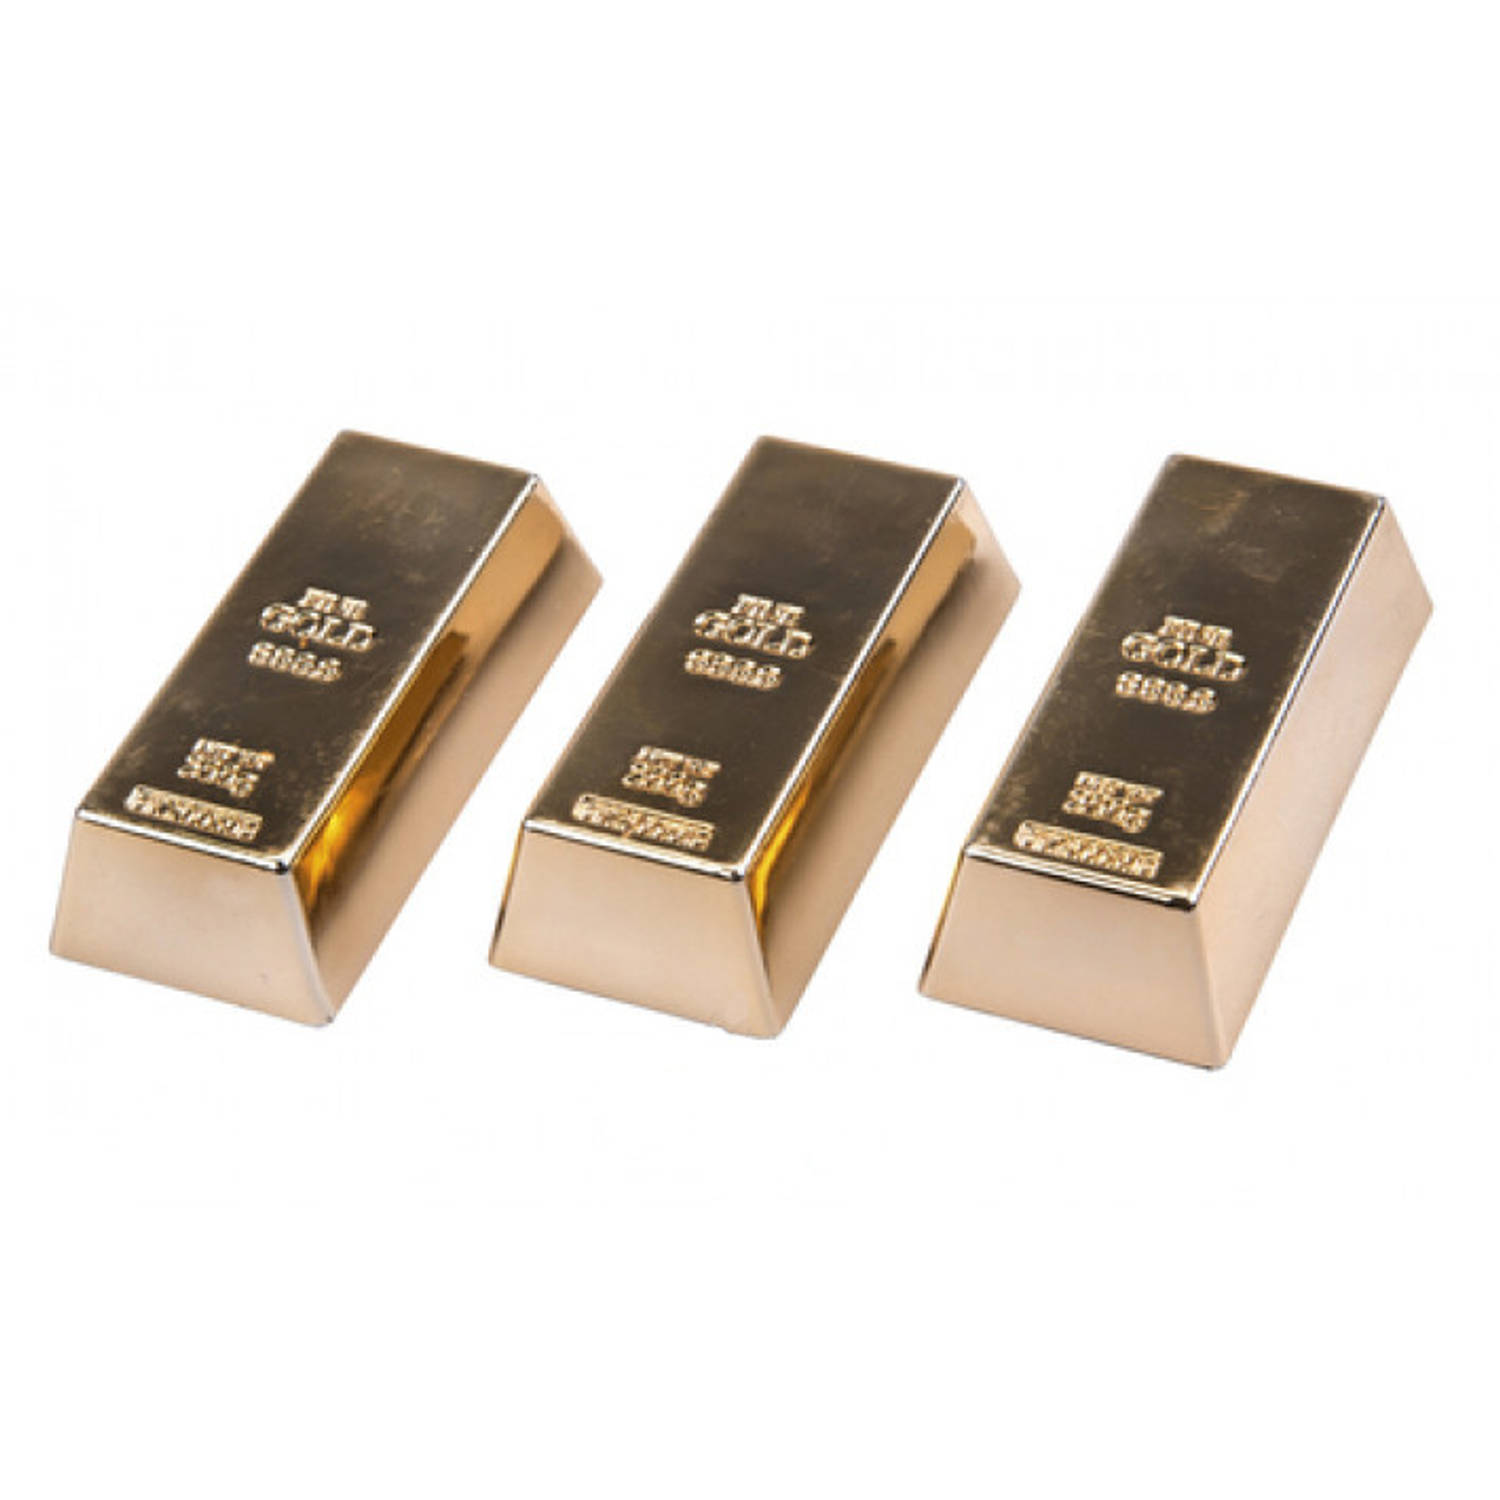 warmte Doorbraak Ongepast Non-Branded memo magneten 3 stuks goud | Blokker